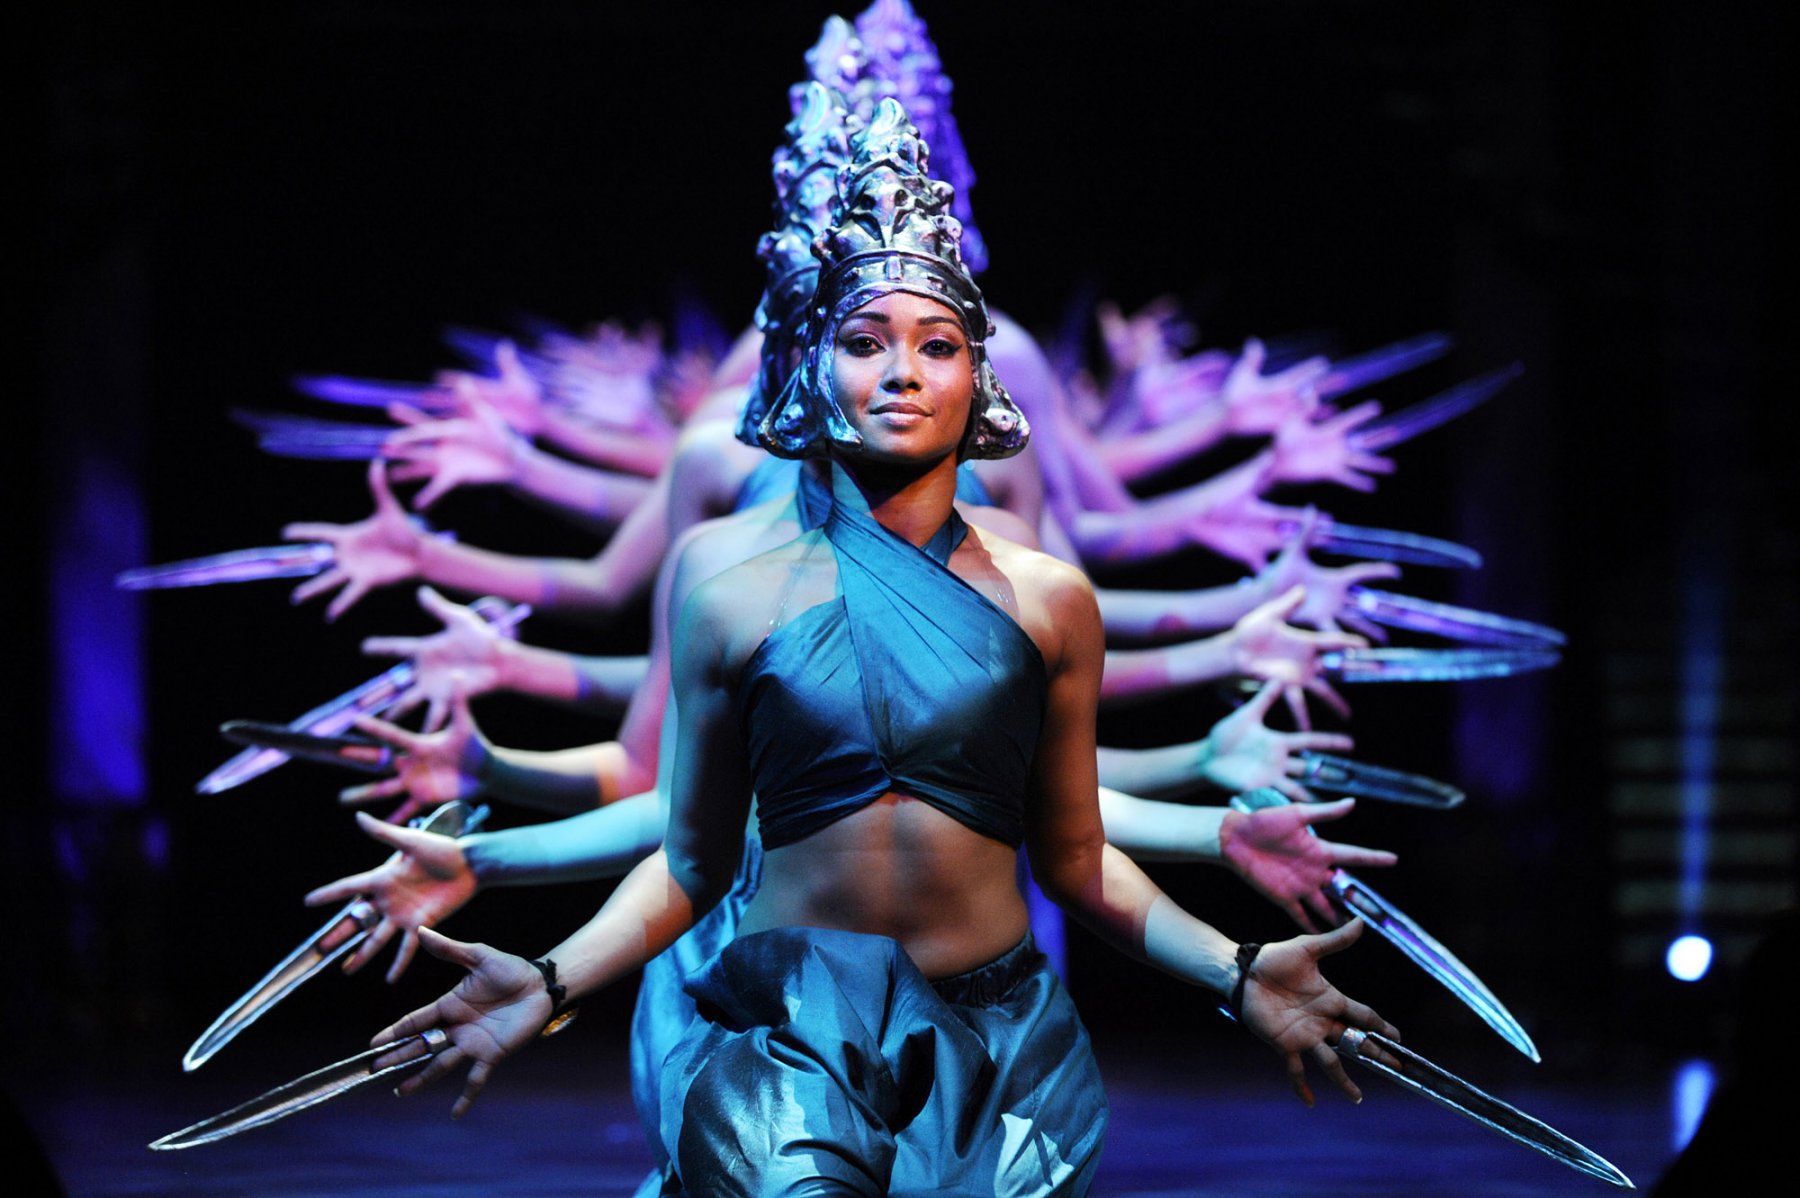 Synchrone Bewegungen vollführen Tänzerinnen beim "Tanz der 1000 Arme" der Show "India" in Frankfurt. Foto: Boris Roessler/dpa